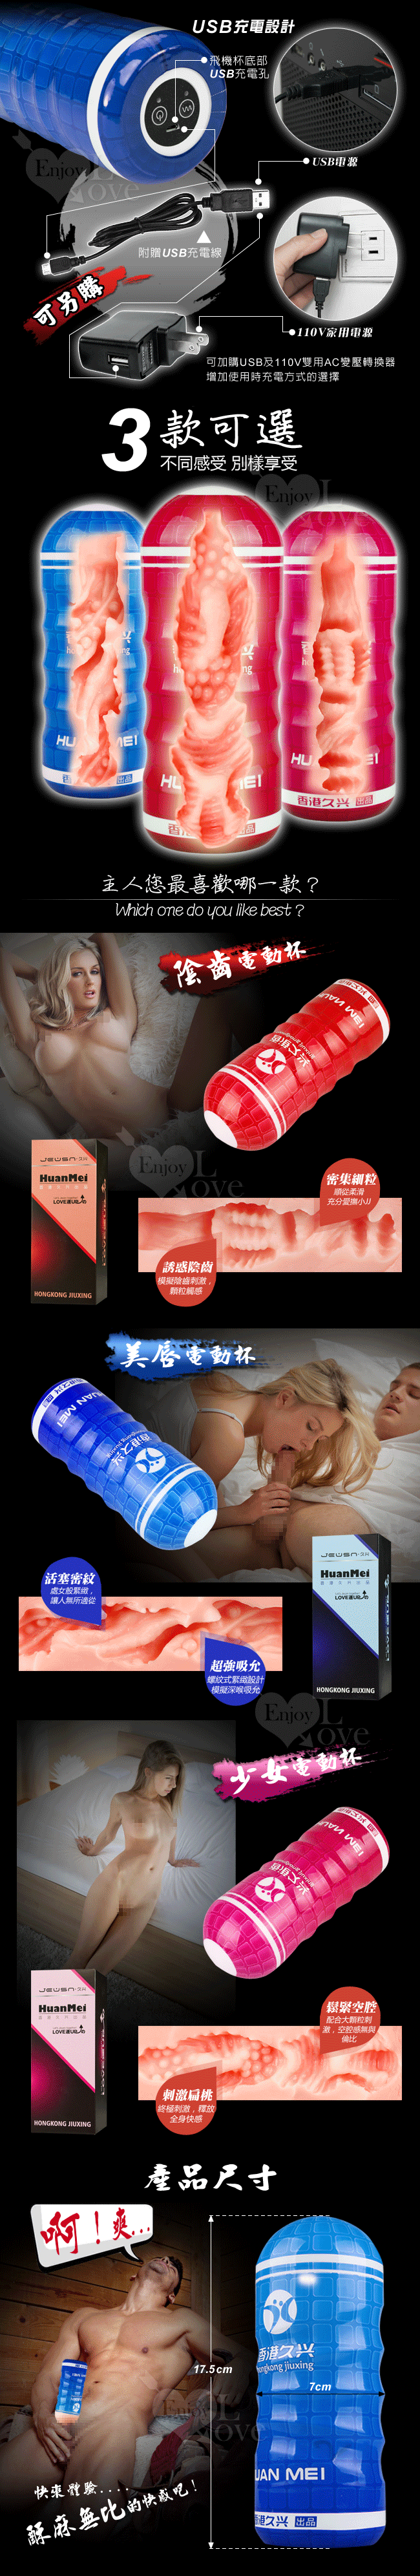 【香港久興】HUANMEI2 幻魅2代 3D複雜仿真肉腔USB充電震動杯﹝藍色美唇款﹞#566025